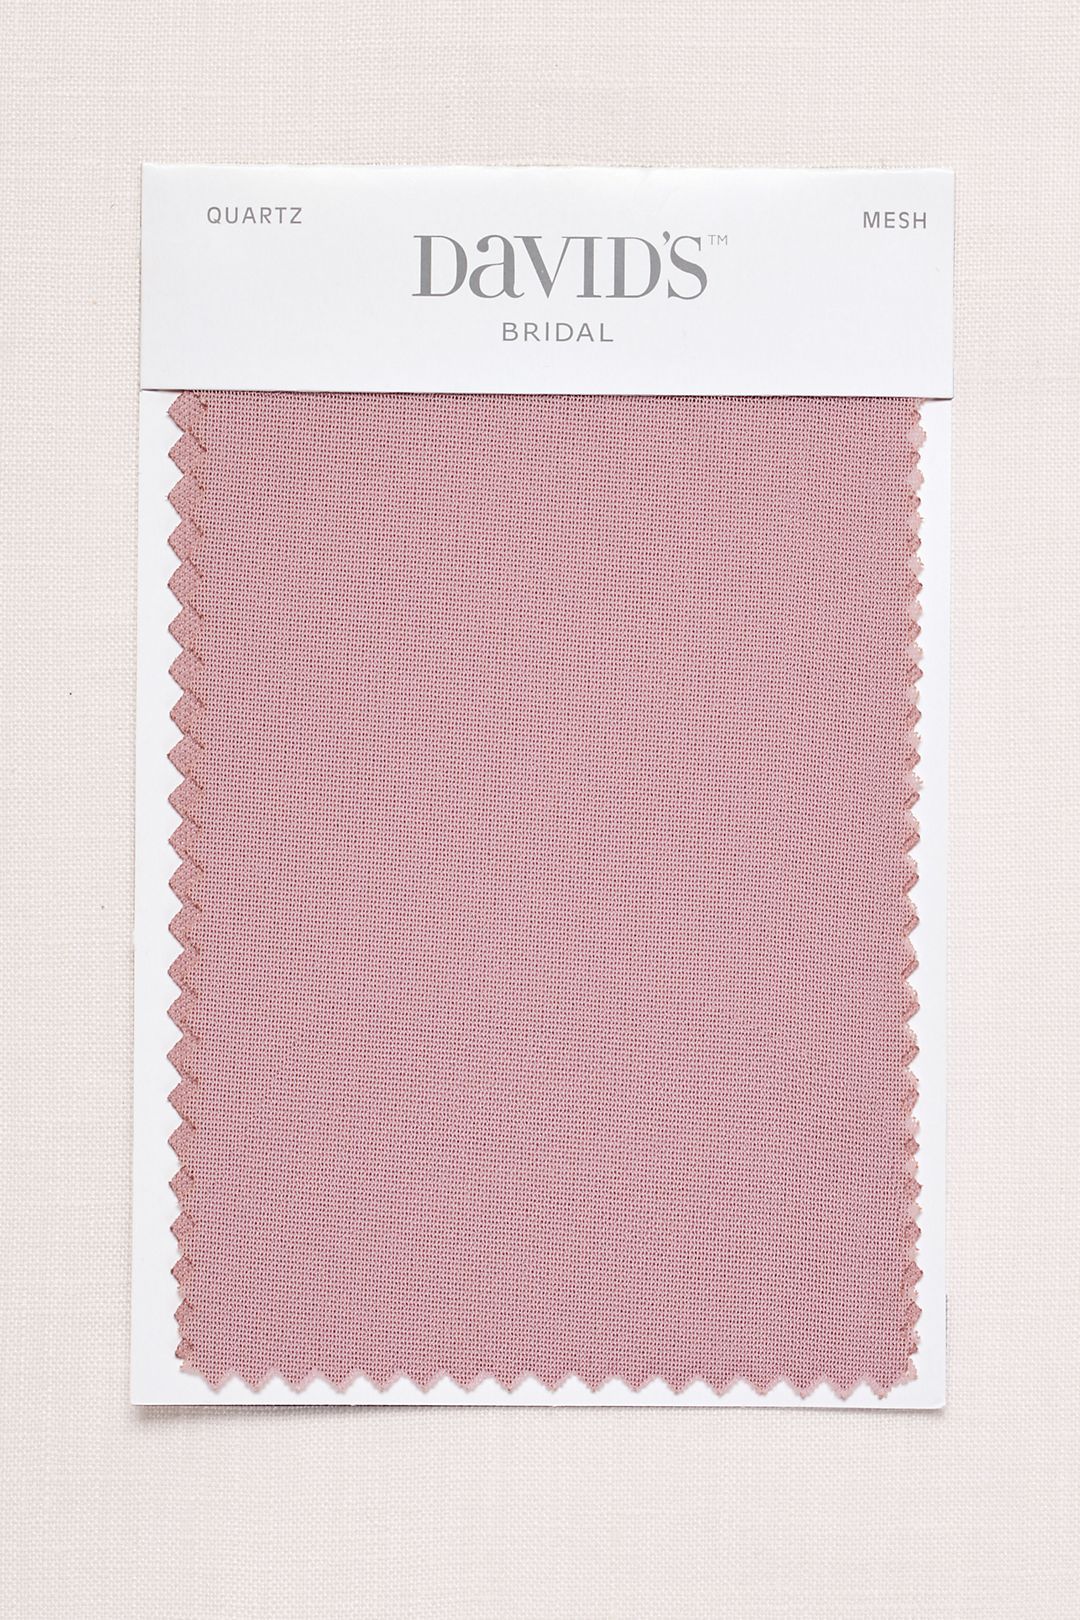 Condensar Esperanzado Descanso Quartz Fabric Swatch | David's Bridal